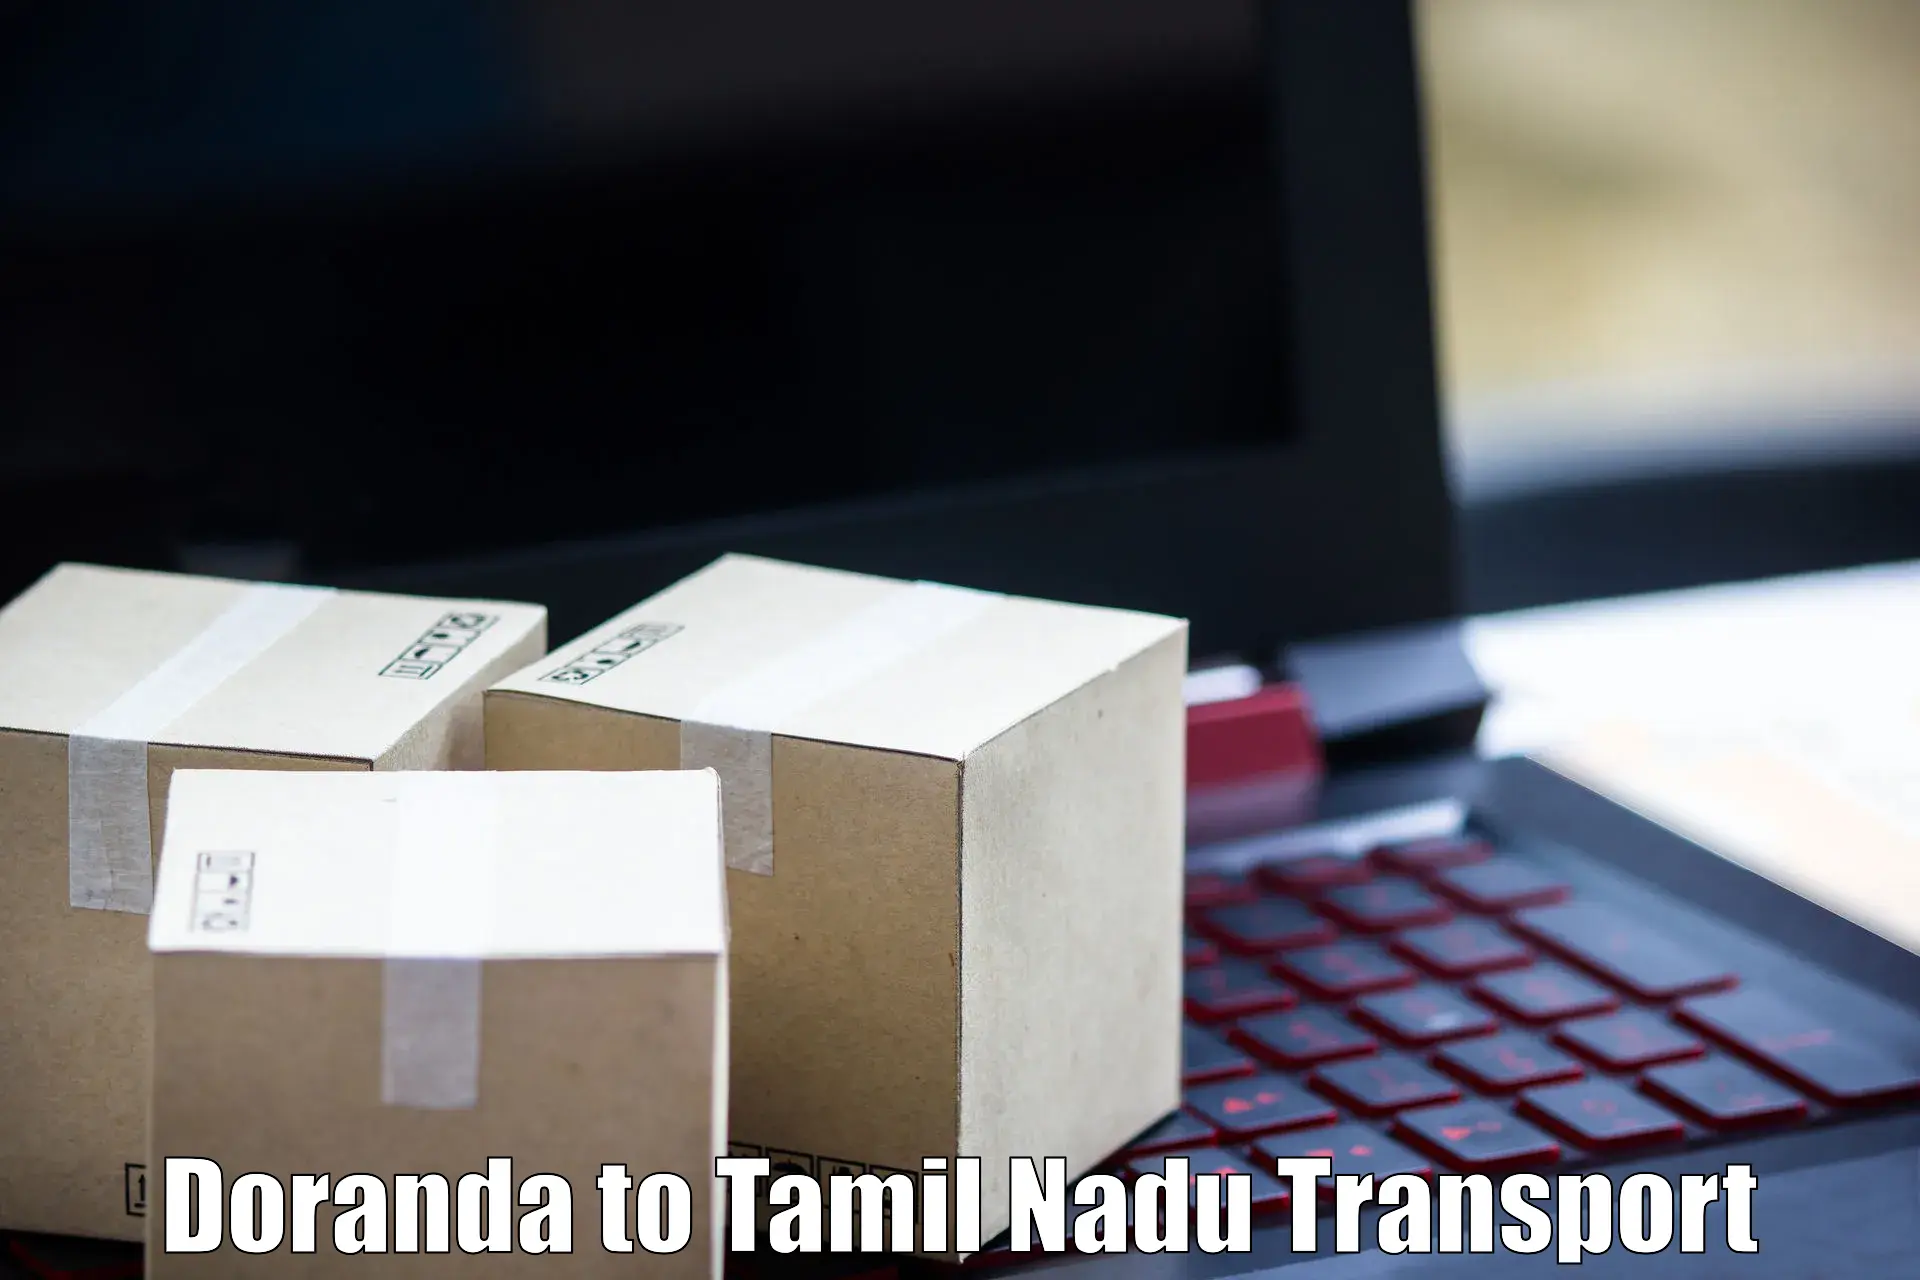 Daily transport service Doranda to Thiruvadanai